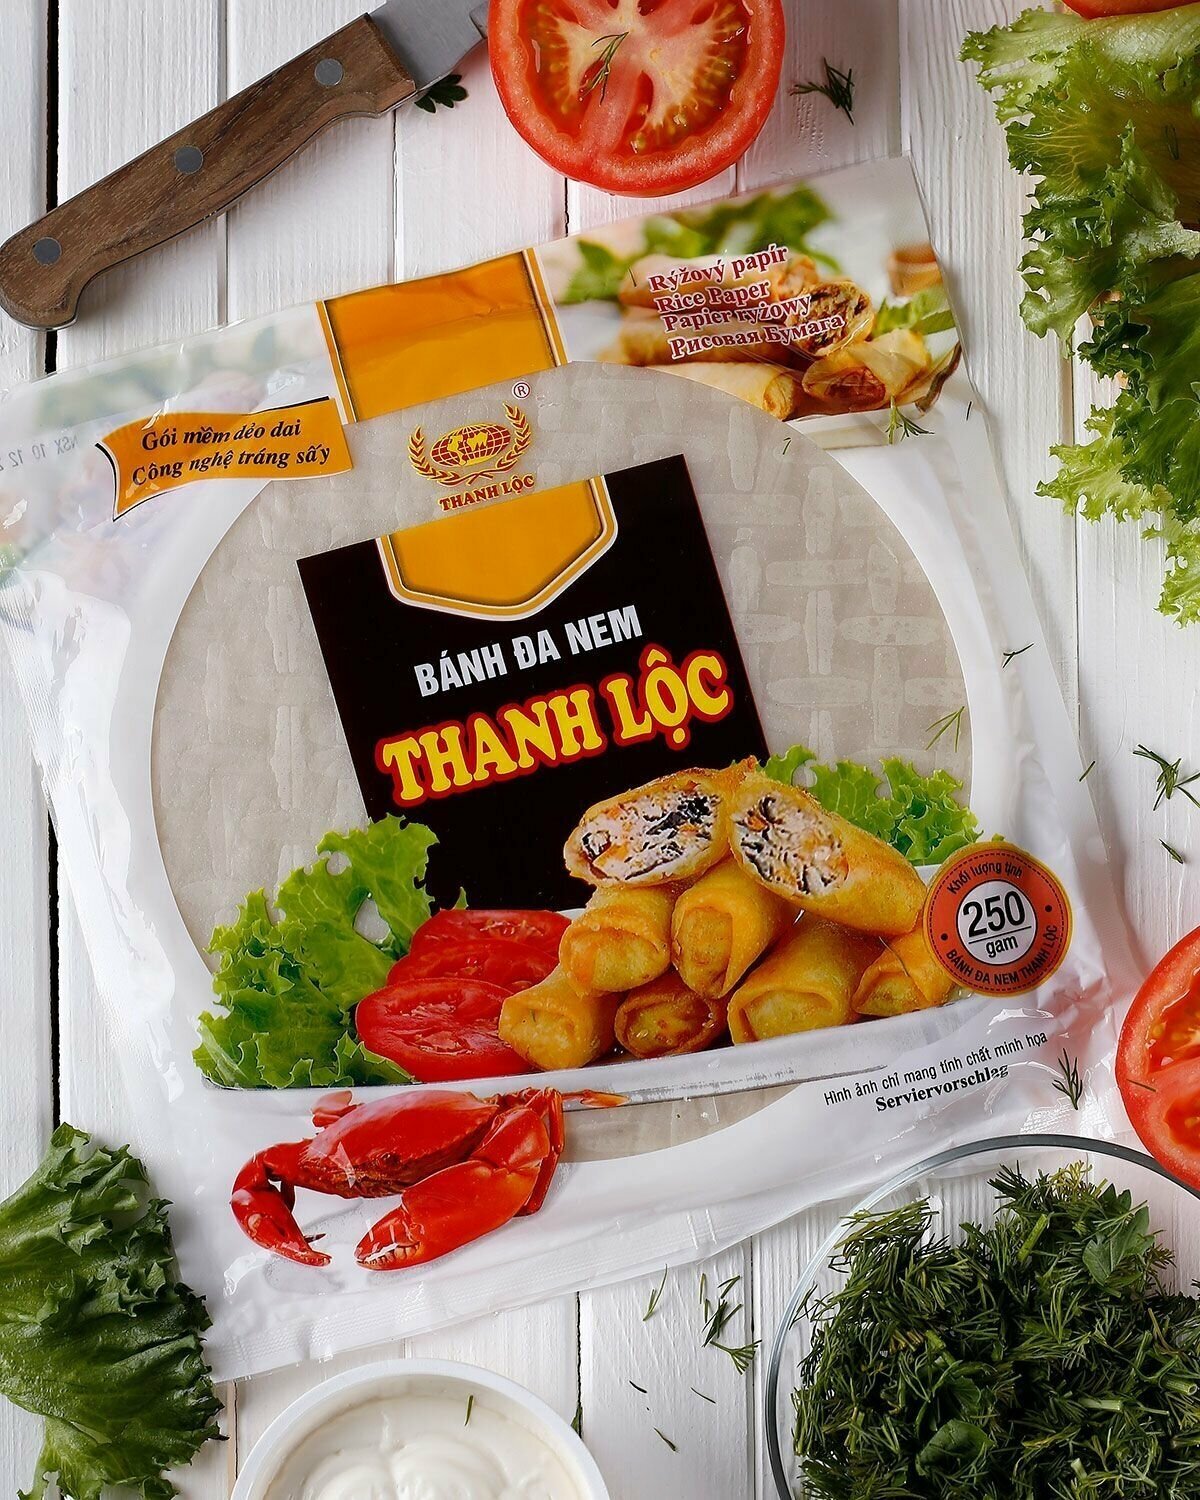 Рисовая бумага круглая для спринг роллов и нэм, 22 см х 30 листов, Thanh Loc Вьетнам, 250 г - фотография № 3